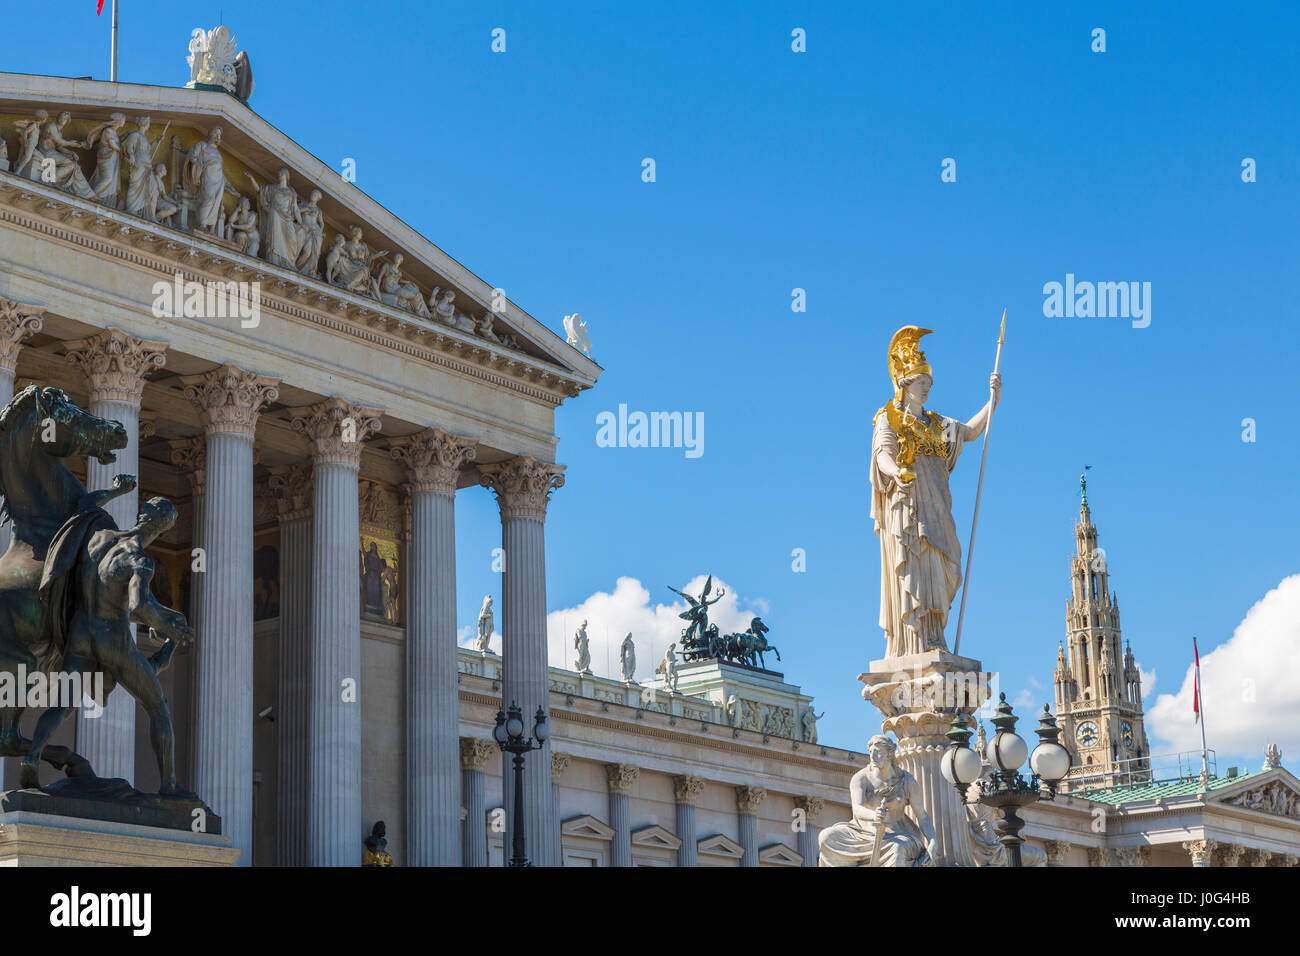 Le Parlement bâtiment et statues, Vienne, Autriche Banque D'Images